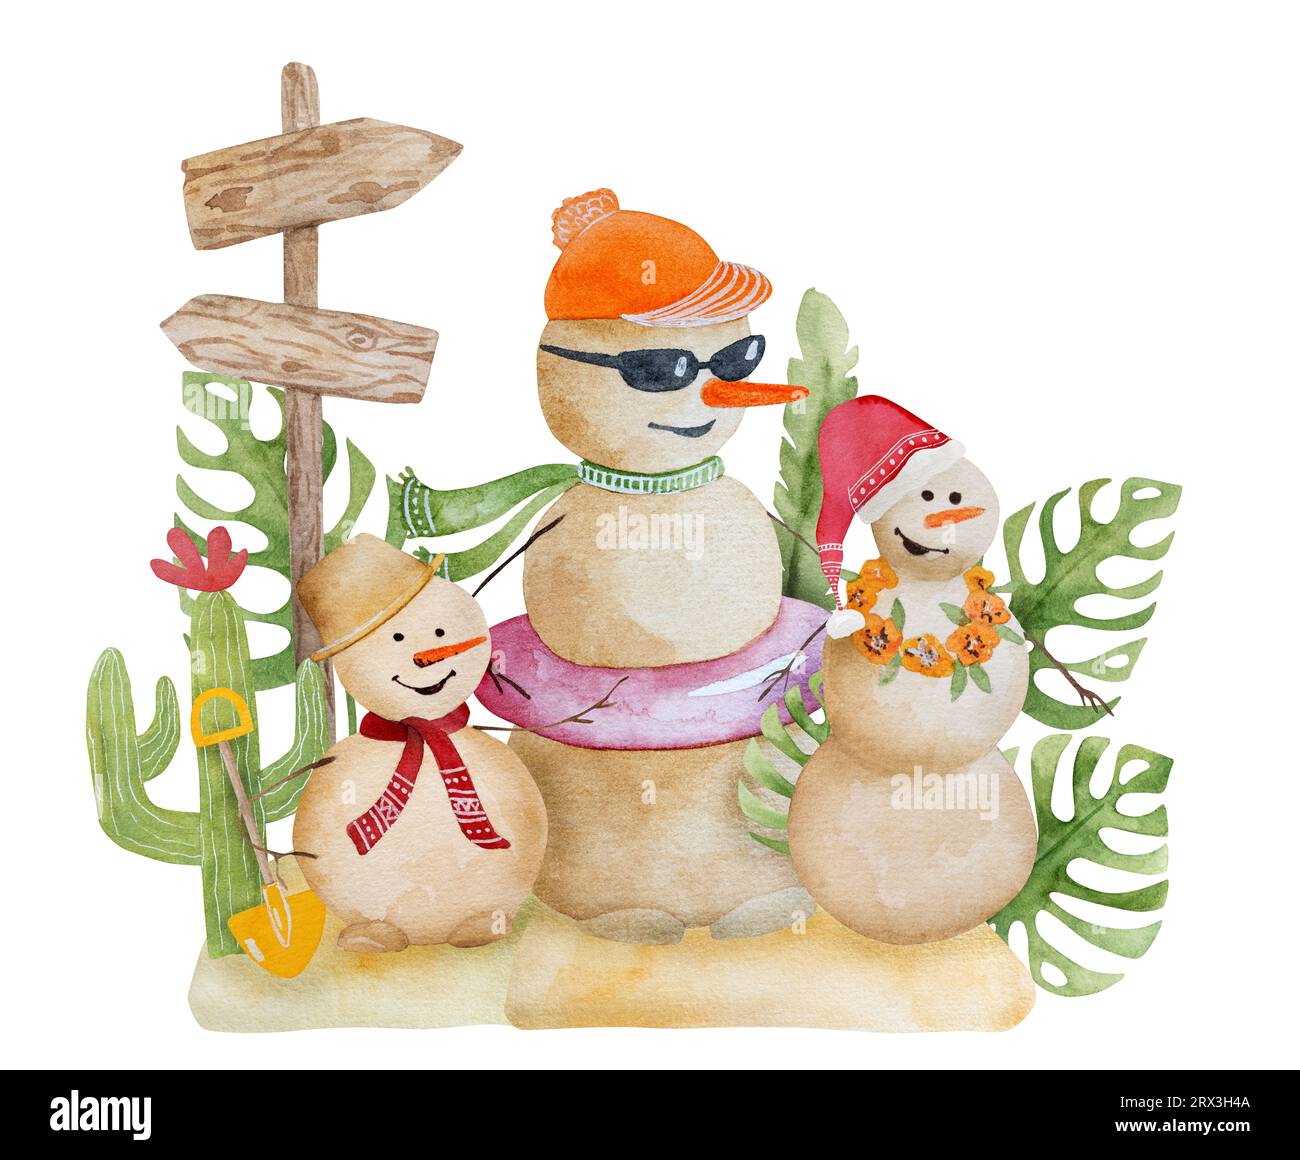 Peinture aquarelle joyeuse de noël des Caraïbes avec des bonhommes de neige drôles et des cactus festifs du Mexique. Carte postale du nouvel an sur la plage tropicale Banque D'Images